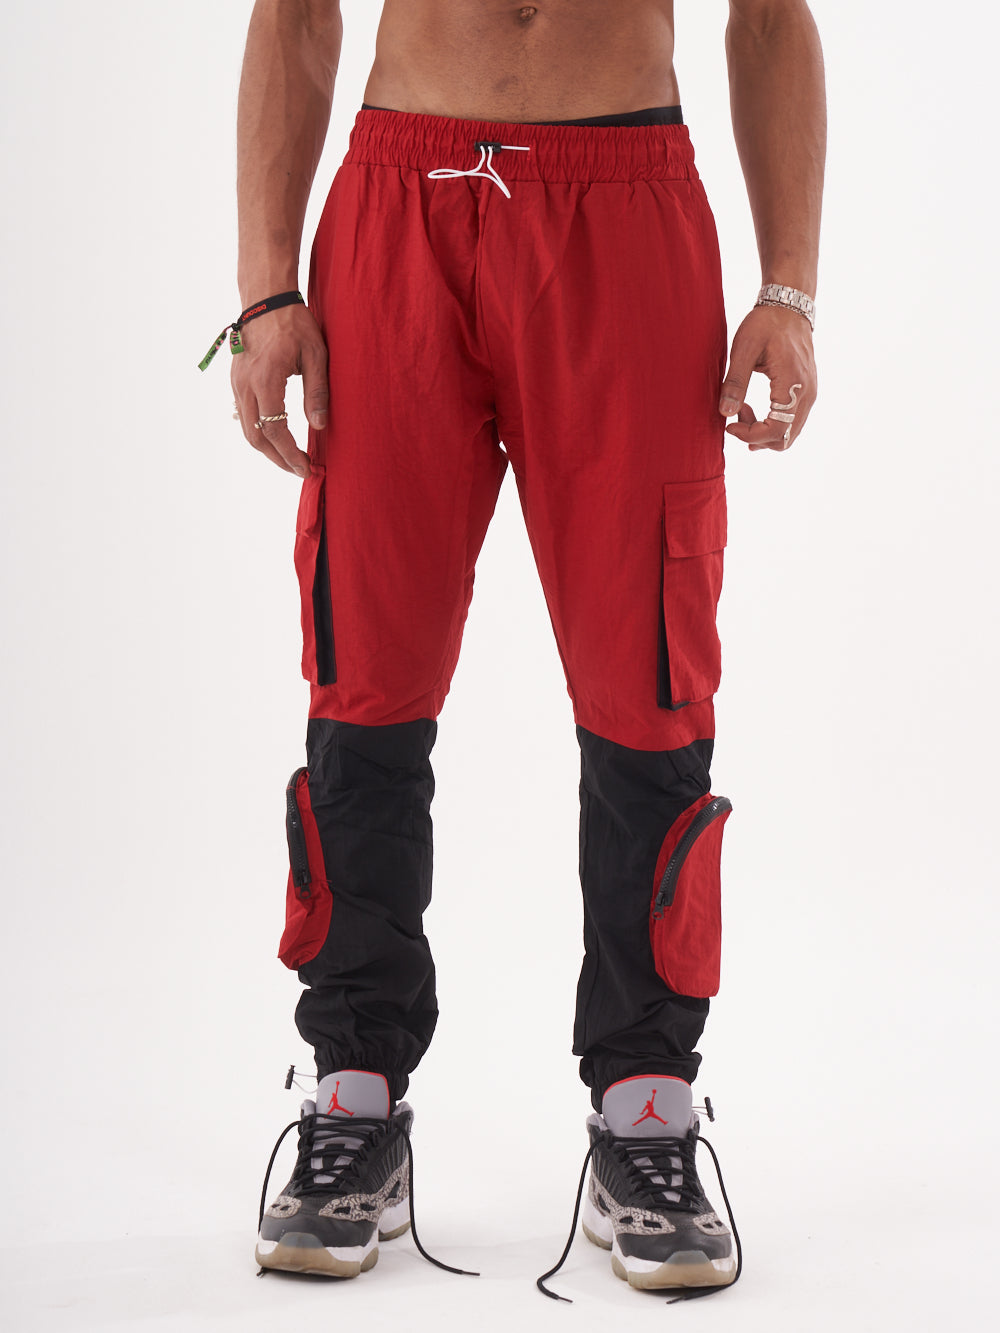 A man wearing RENEGADE | RED cargo pants.